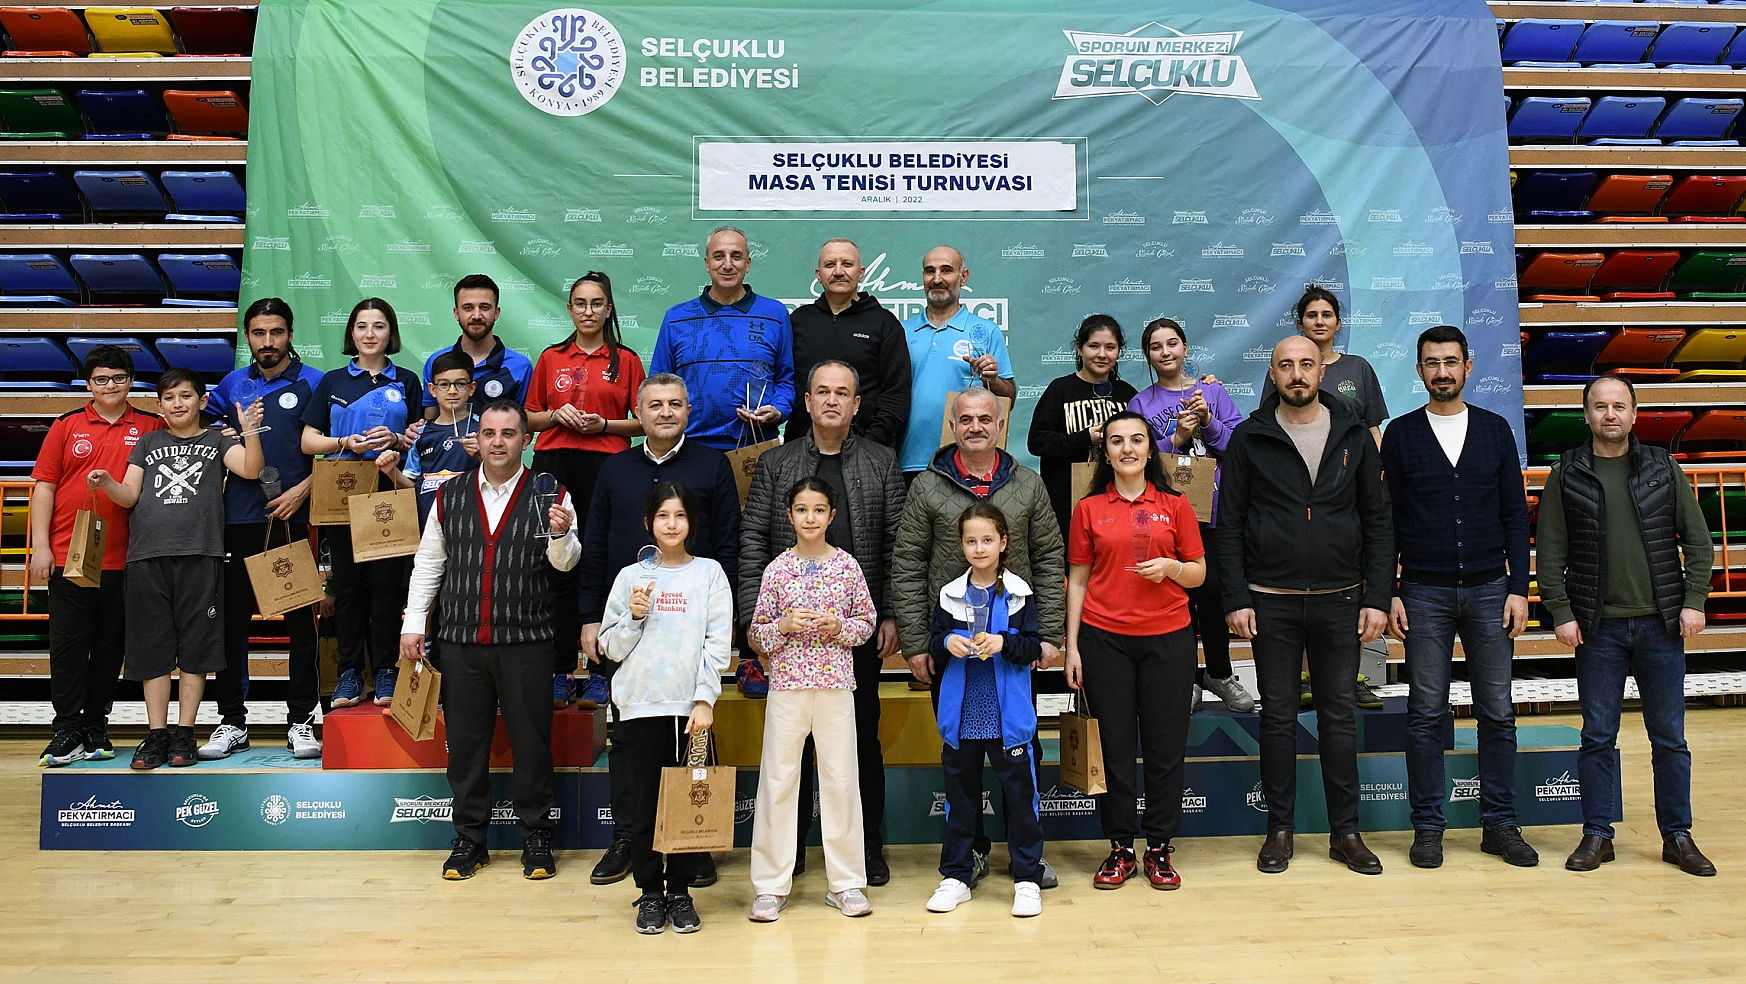 Selçuklu Belediyesi Masa Tenisi Turnuvası sona erdi